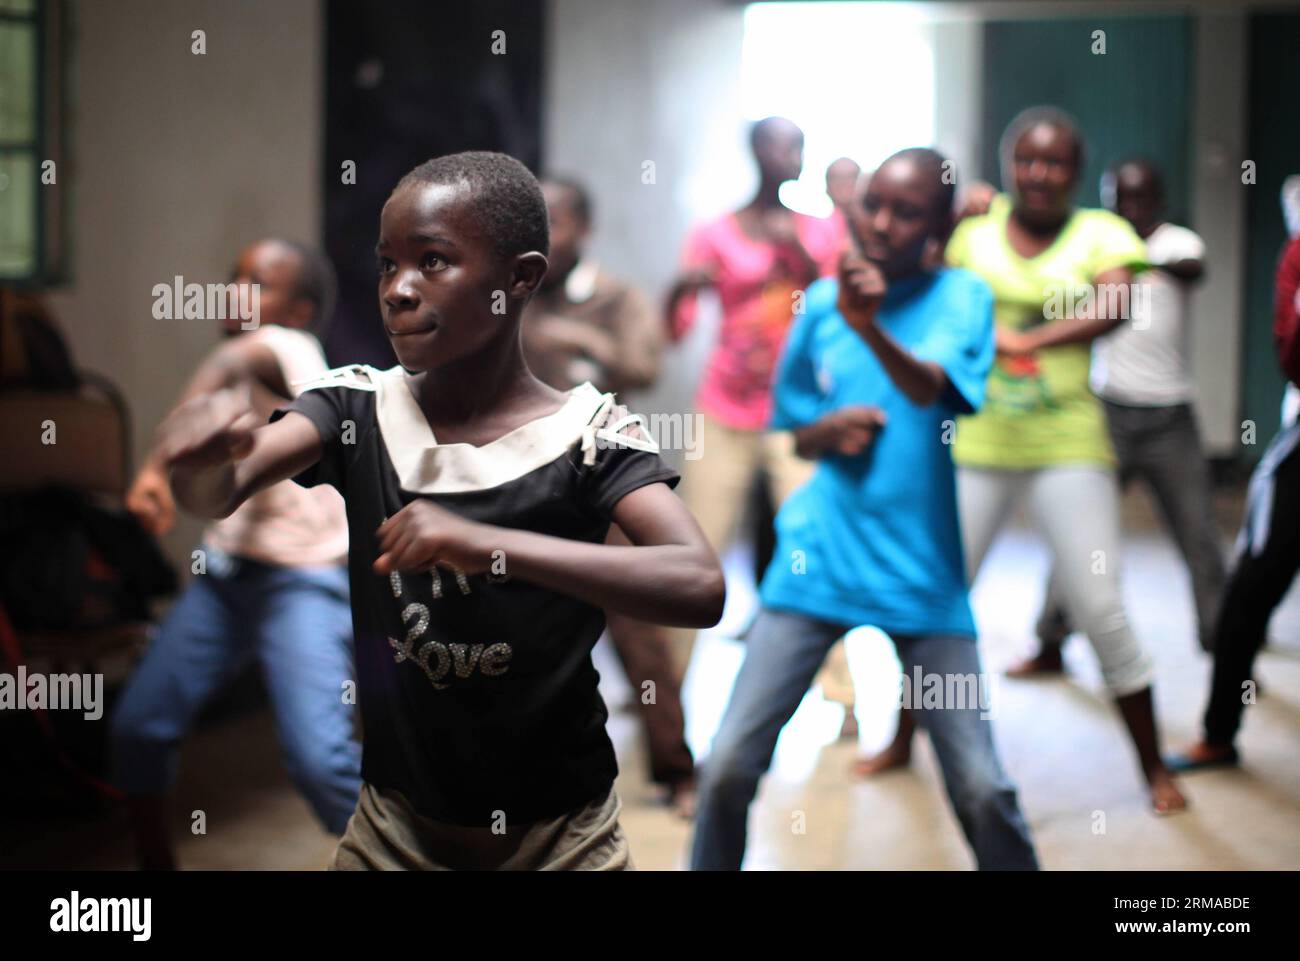 NAIROBI, 29. Juni 2014 -- die Schüler lernen in einer Boxschule in einem Gebäude in Korogocho Slum, Nairobi, Hauptstadt von Kenia, 29. Juni 2014 Boxenkenntnisse. Die Boxschule mit mehr als hundert Schülern im Alter von 4 bis 20 Jahren wird von der NGO Fight for Peace gegründet. Die Schule nutzt Boxen und Kampfkunst in Verbindung mit Bildung, um das Potenzial junger Menschen zu nutzen und sie von Verbrechen und Gewalt fernzuhalten. Derzeit gibt es Dutzende solcher Boxschulen in den Slums von Nairobi, die von verschiedenen Organisationen gegründet wurden. (Xinhua/Zhou Xiaoxiong) (dzl) KENIA-NAIROBI-SLUMS-BOXSCHULE PUBLICATIONxNO Stockfoto